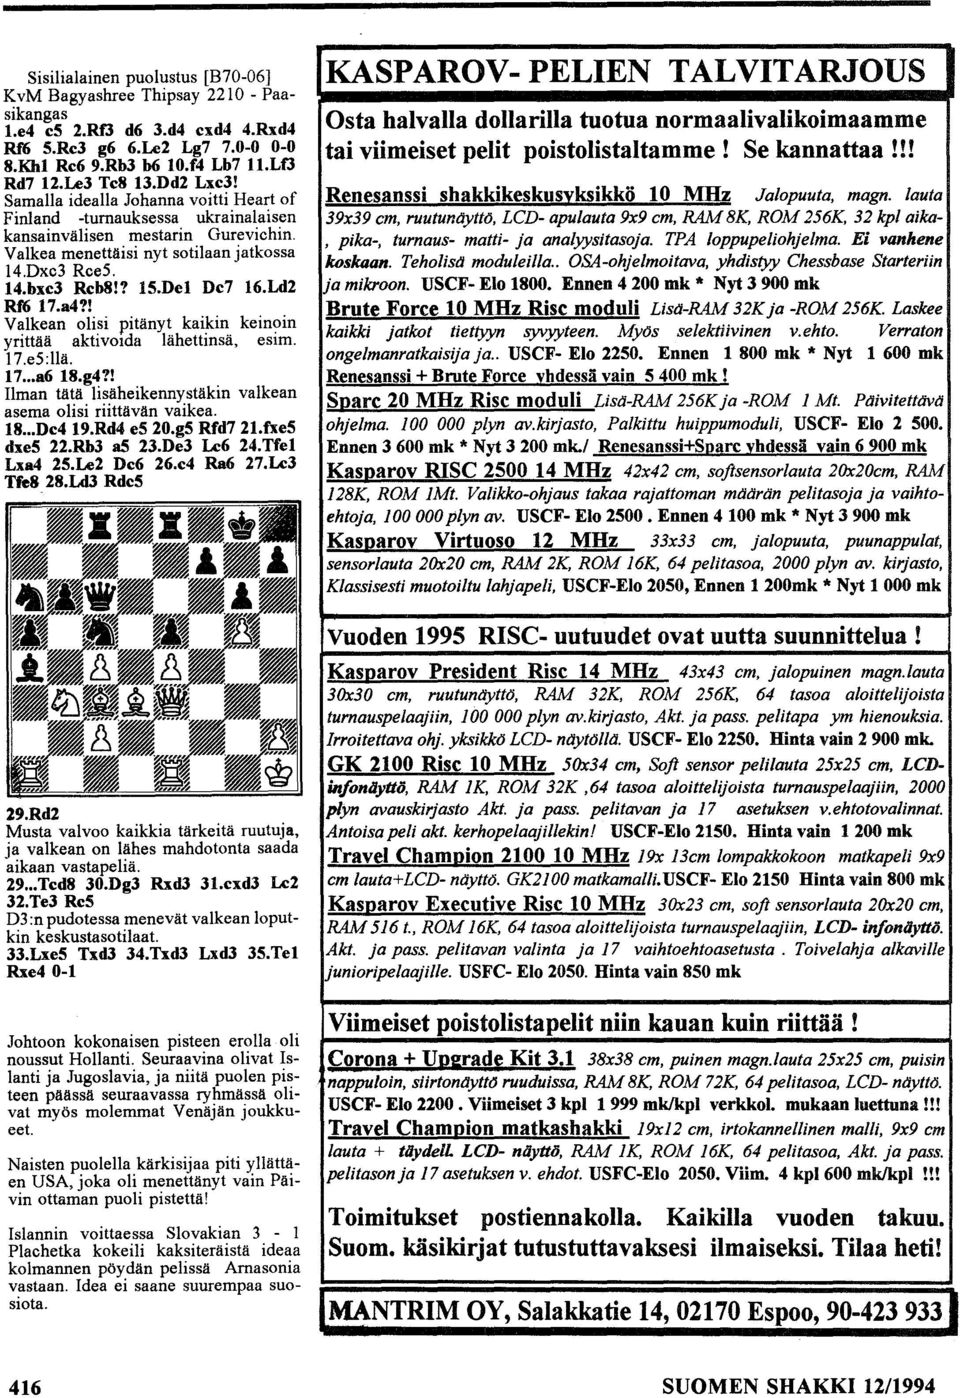 del De7 16.Ld2 Rf6 17.a4?! Valkean olisi pitänyt kai~in kein?in yrittää aktivoida lähettmsä, eslm. 17.e5:llä. 17... a618.g4?! Ilman tätä lisäheikennystäkin valkean asema olisi riittävän vaikea. 18.